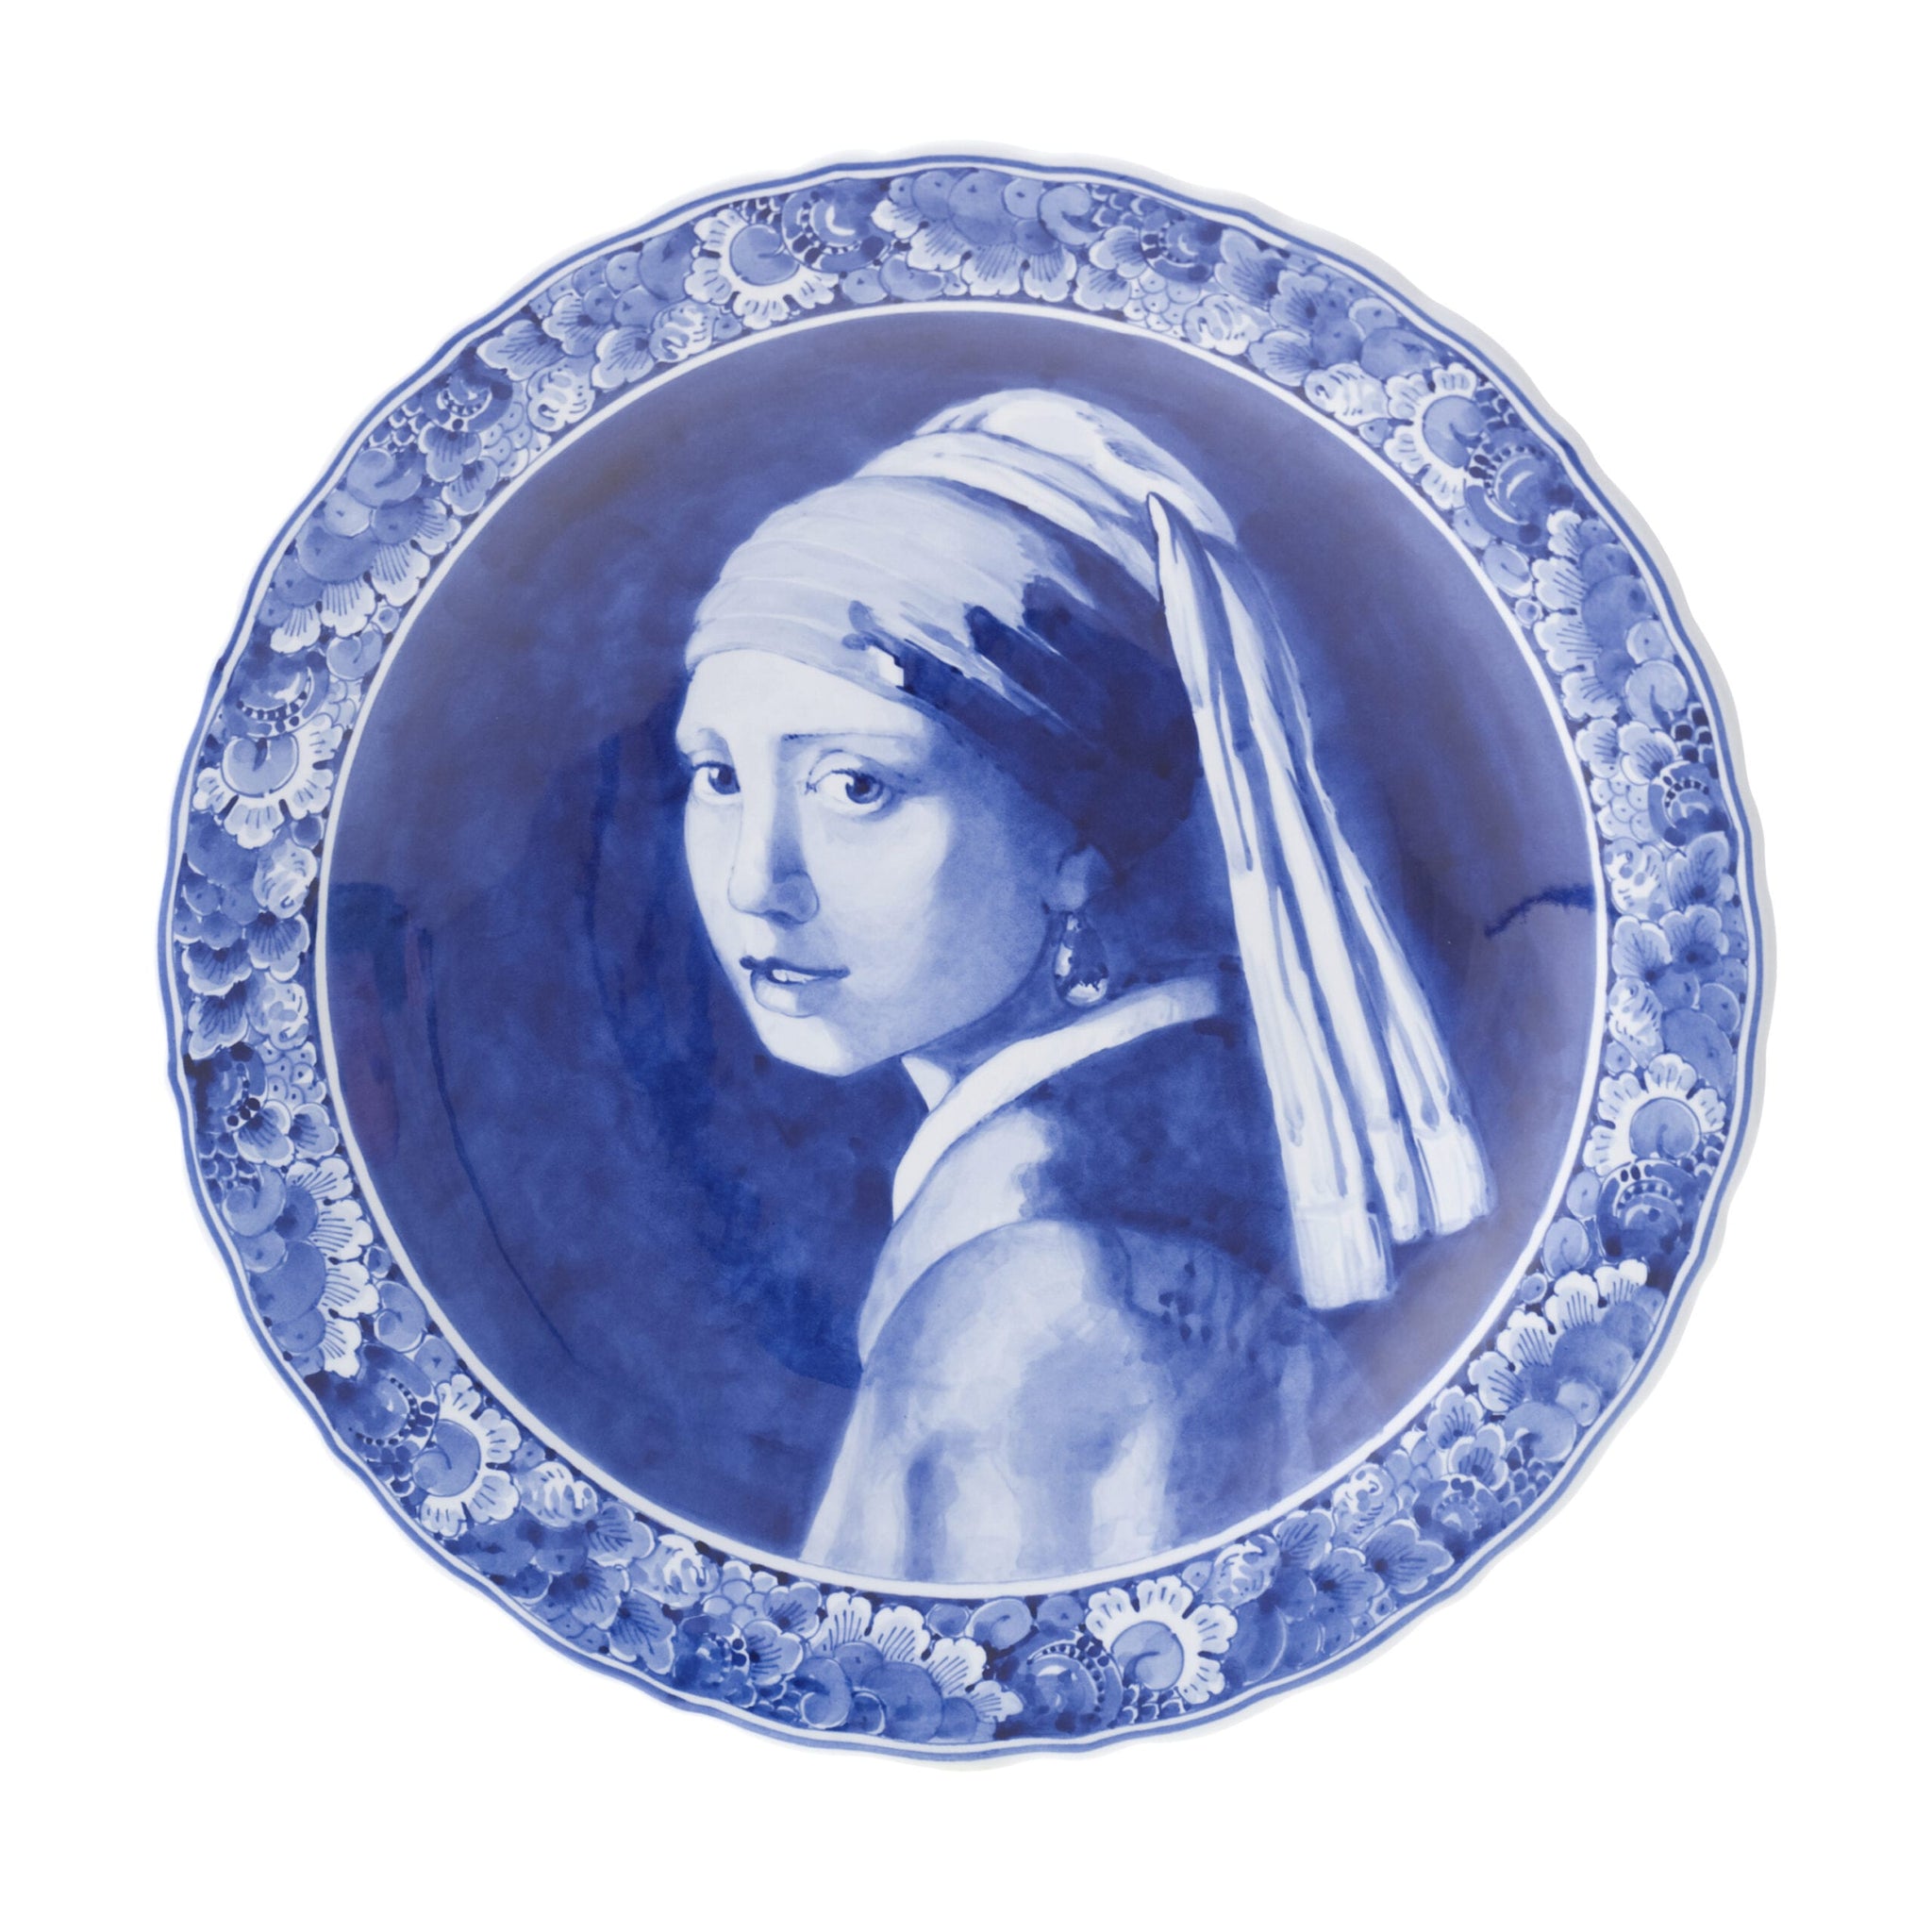 geweld Welvarend iets Classic Porcelain - DELFT BLUE Vermeer Girl PLATE – Calvert & Collection